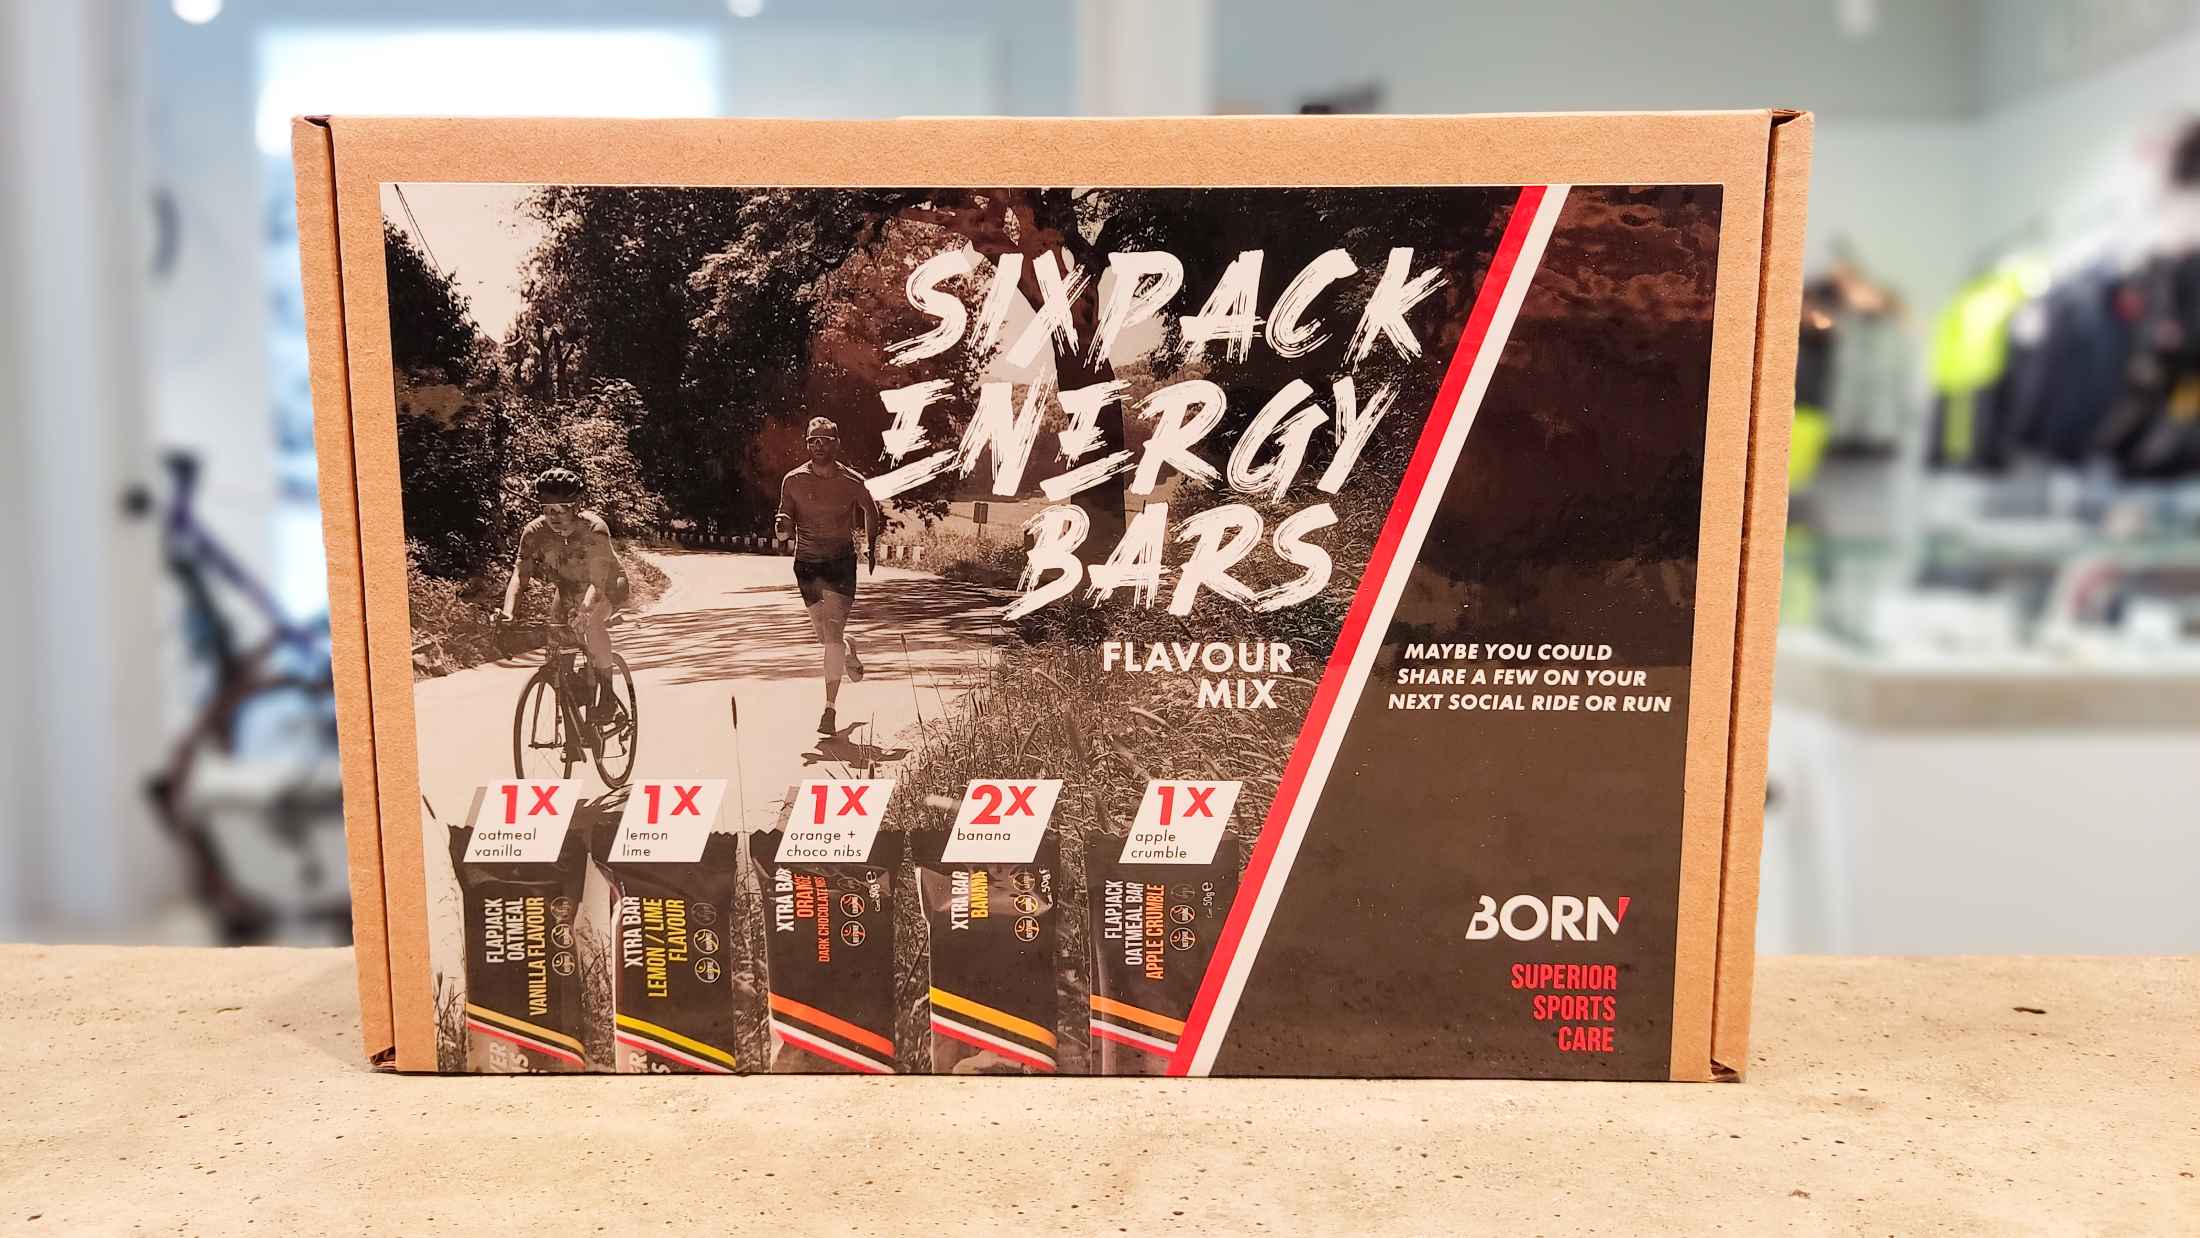 Born sixpack energy bars kopen Antwerpen